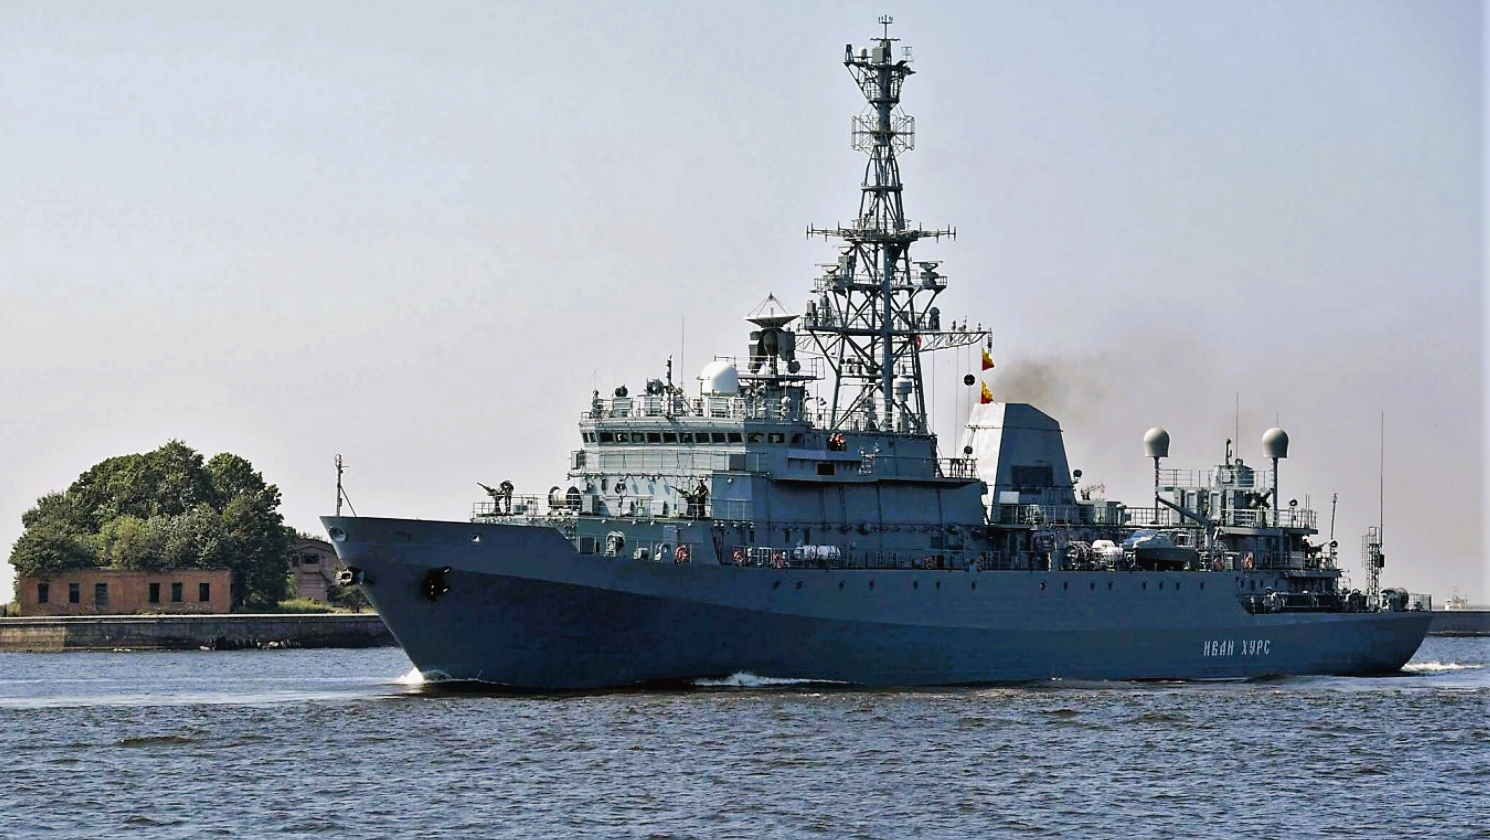 Marinedrohnen greifen russisches Kriegsschiff an! Putins Marine nirgendwo mehr sicher